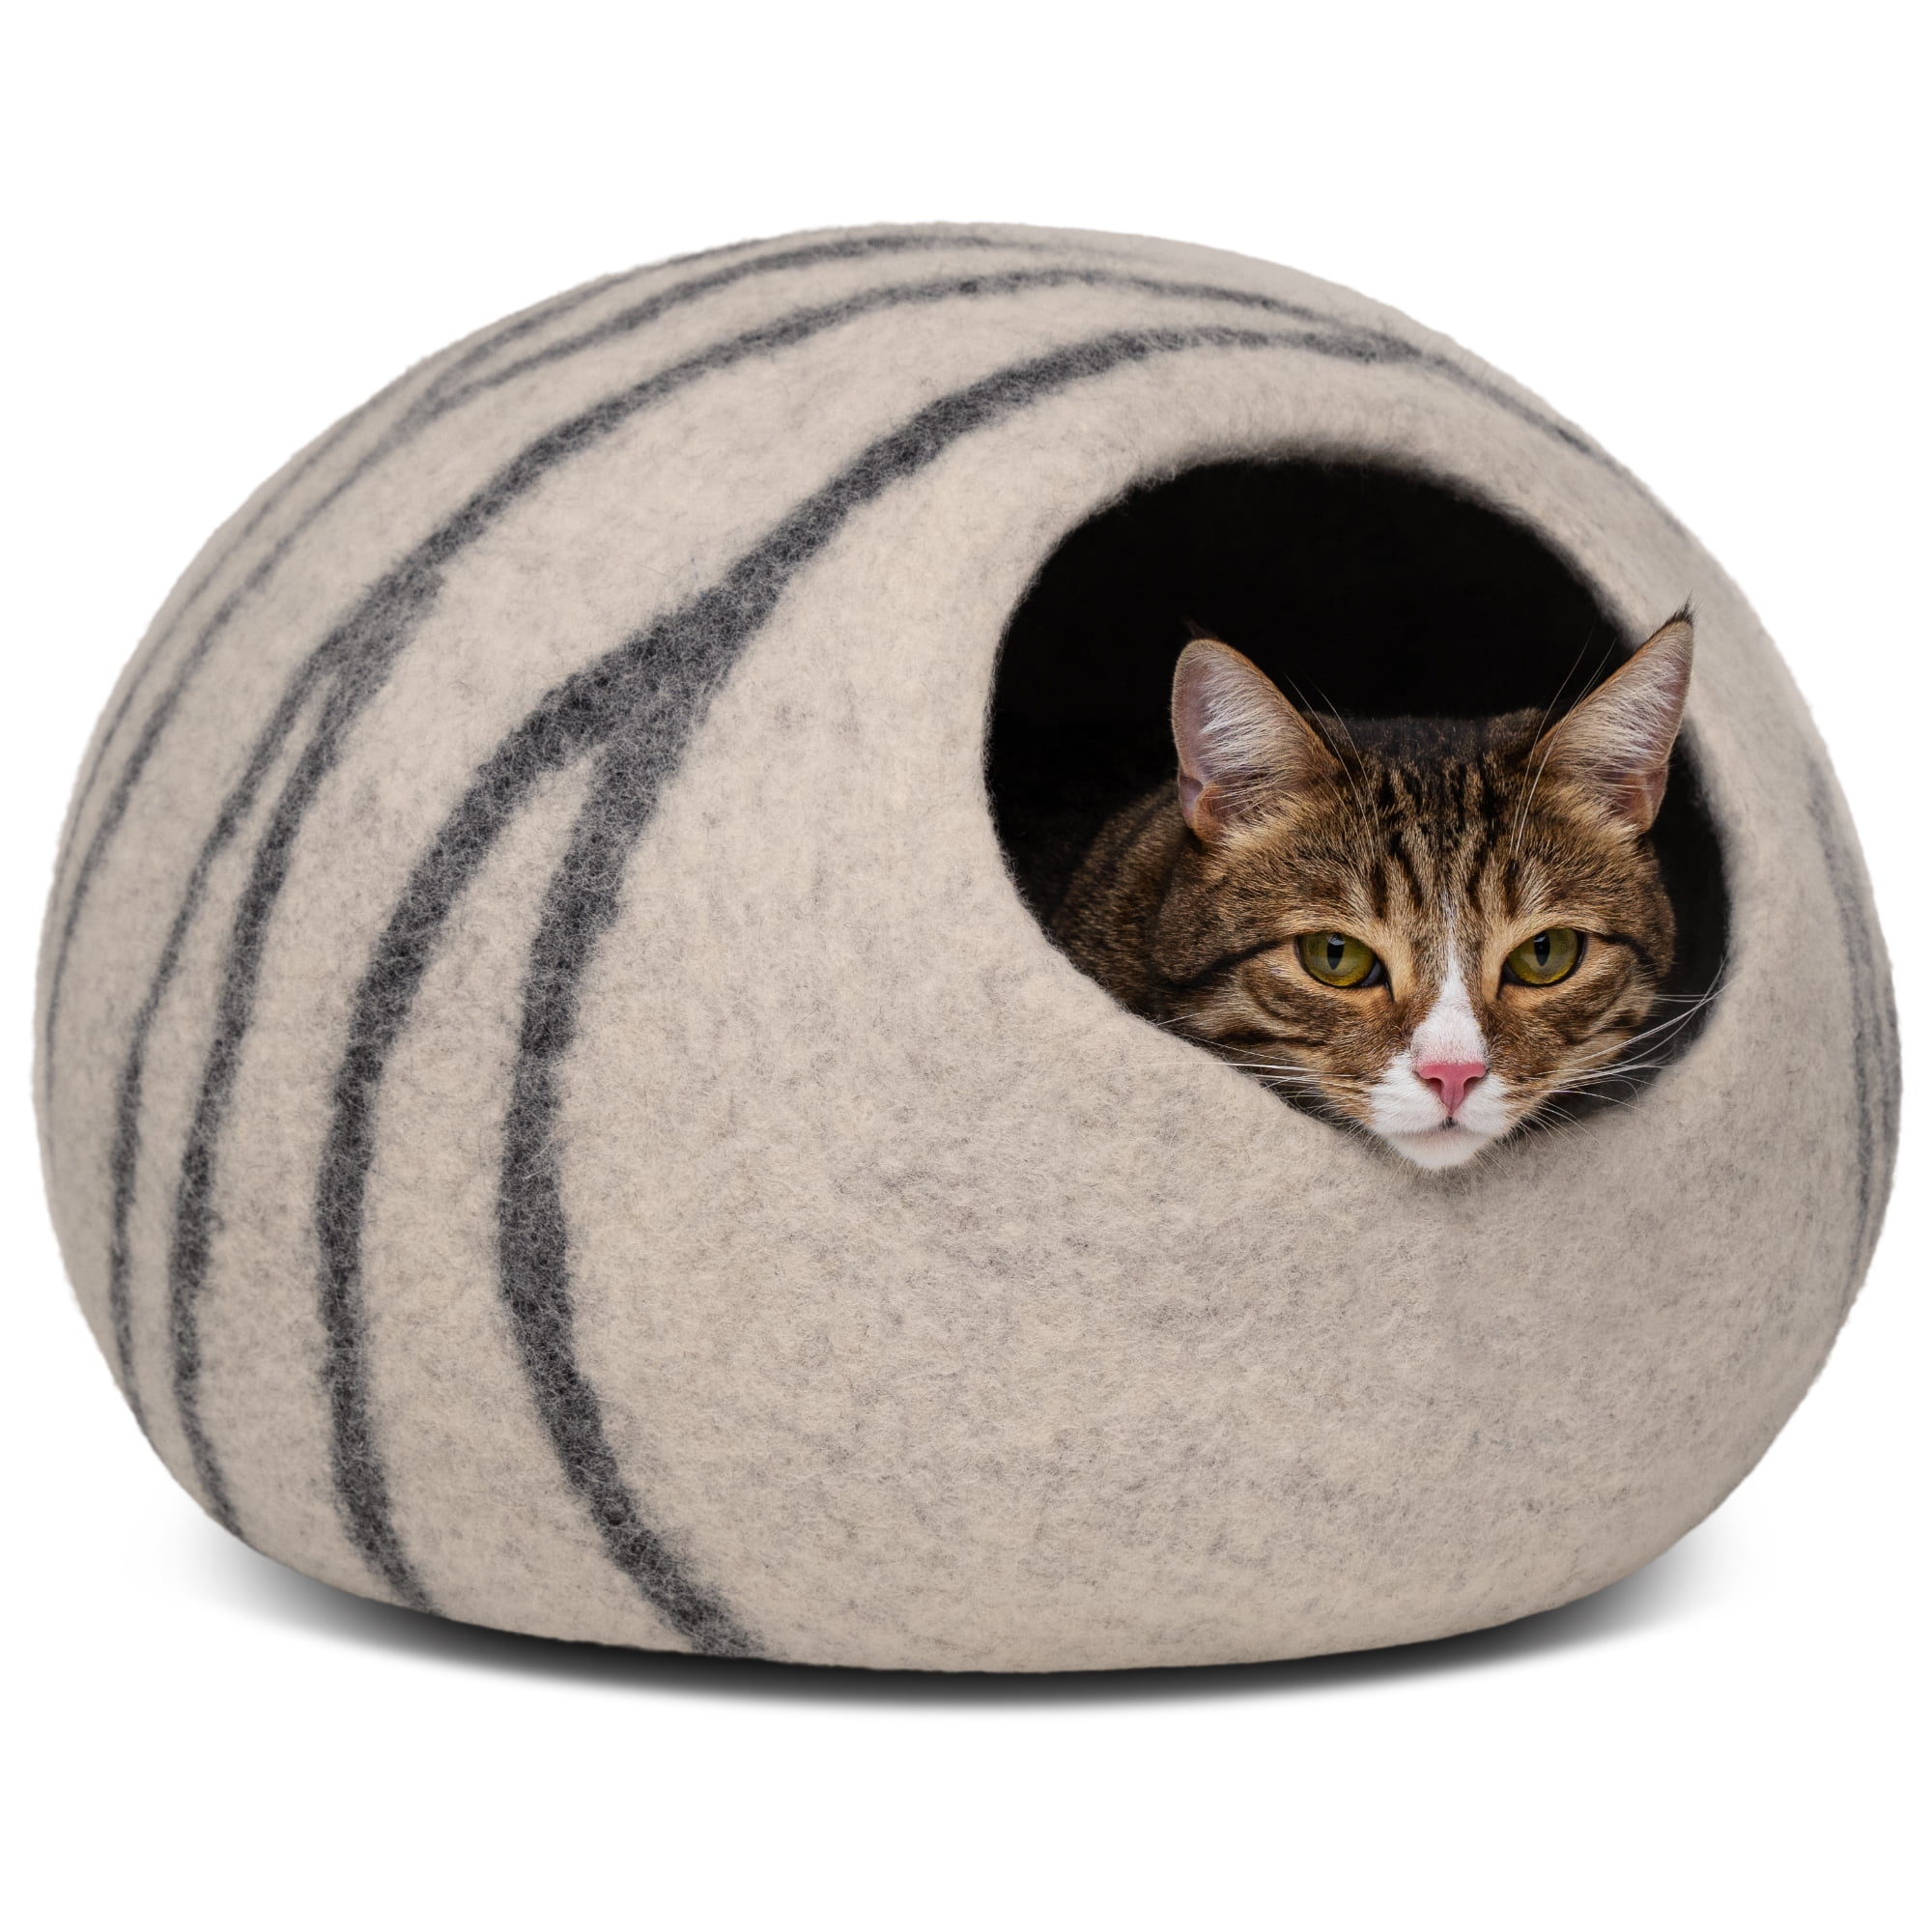 MEOWFIA Cat Bed for Medium Cats - Wool Cat Cave Bed - Light Grey - Walmart.com